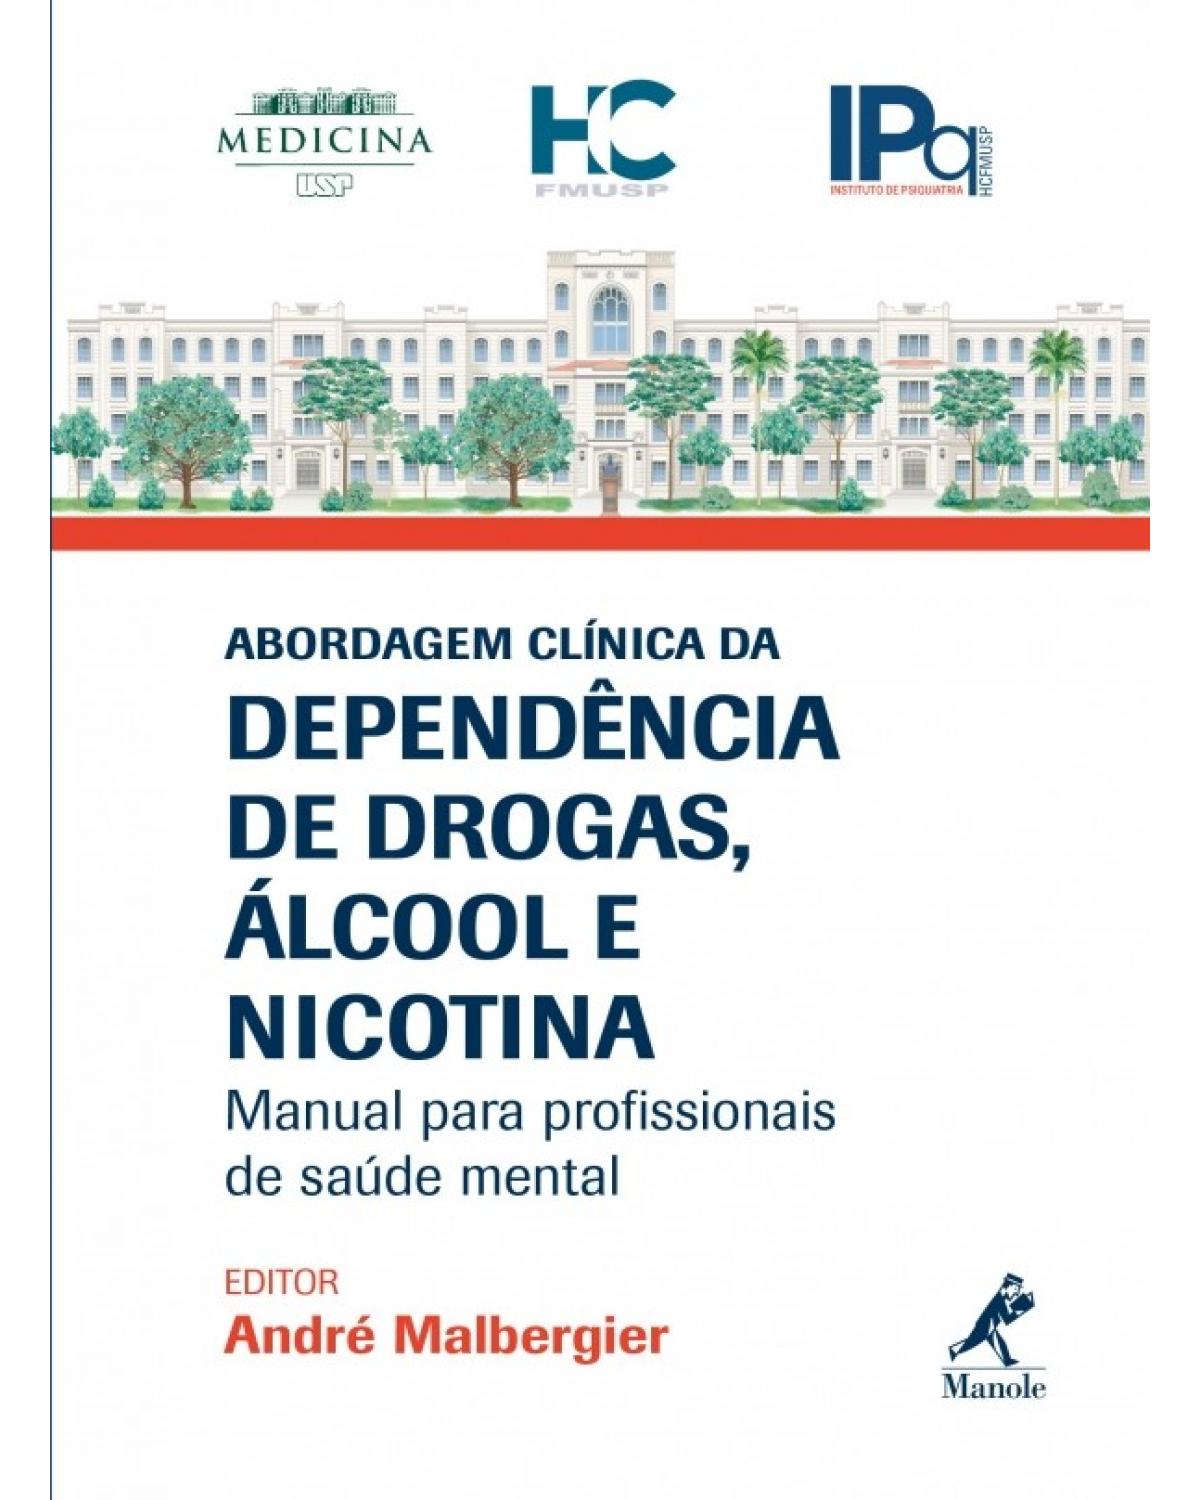 Abordagem clínica da dependência de drogas, álcool e nicotina - Manual para profissionais de saúde mental - 1ª Edição | 2018